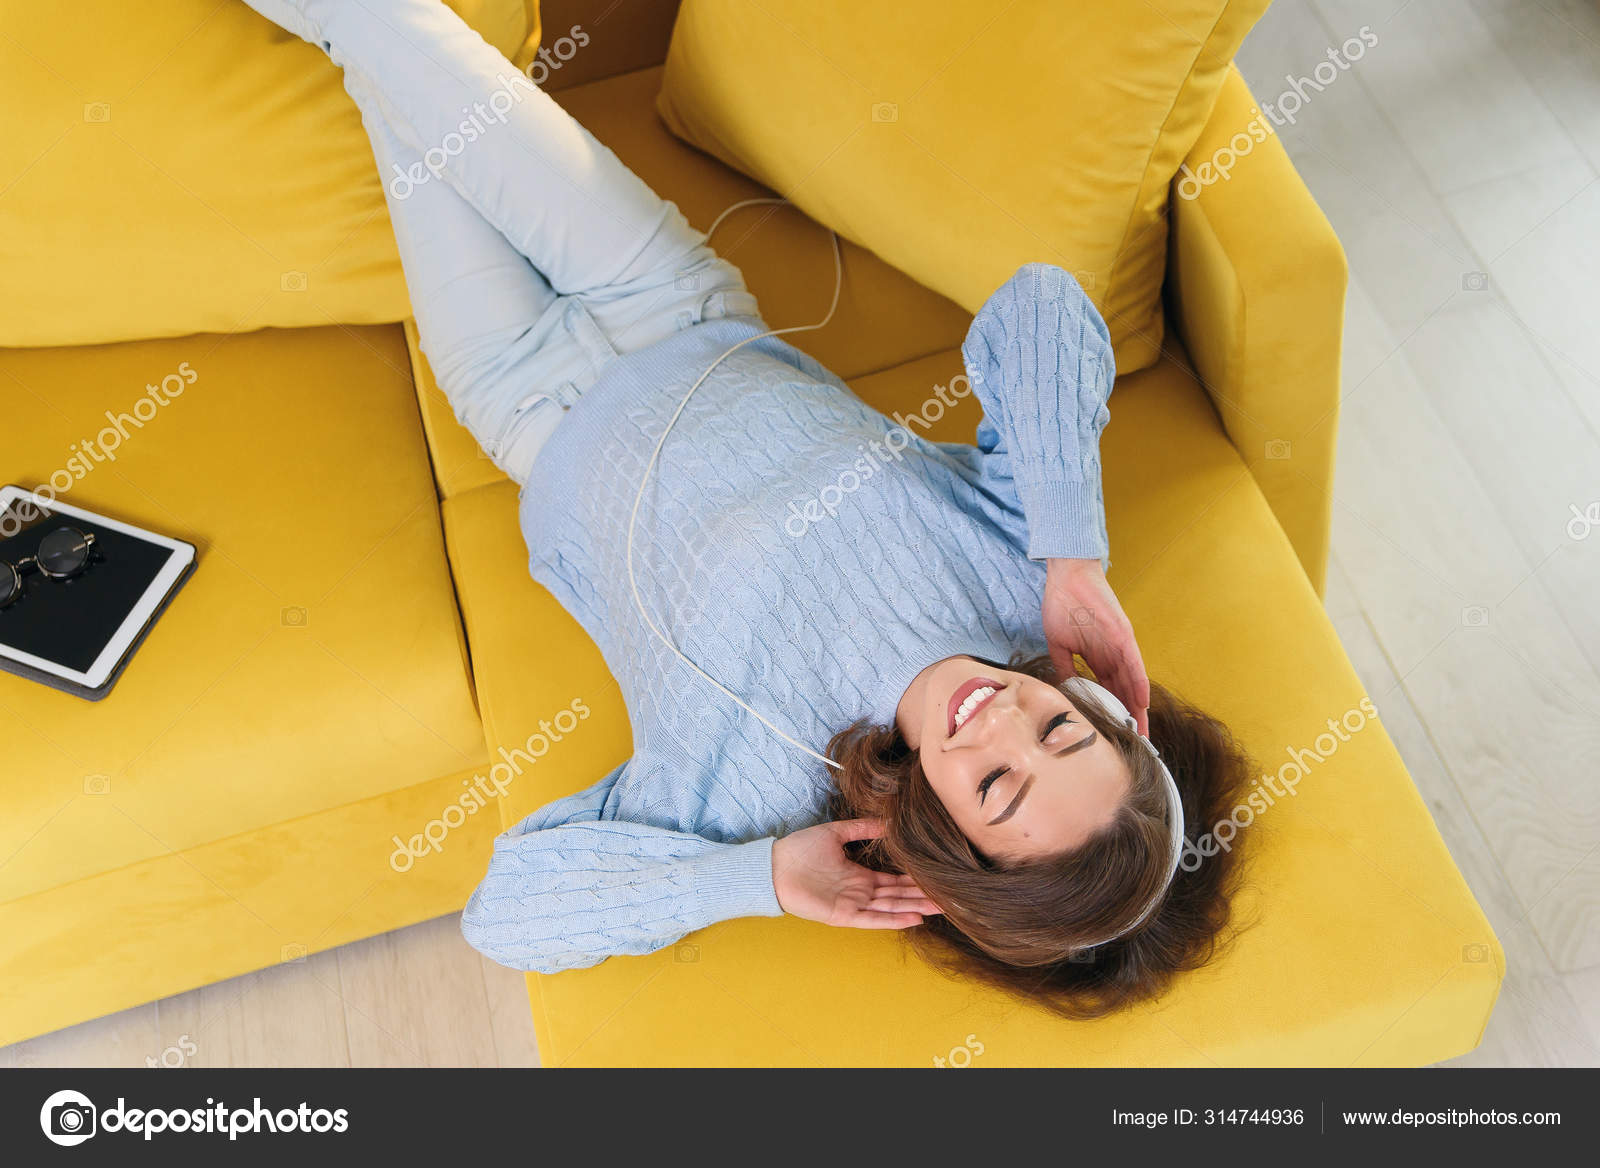 Menina sorridente, deitada no sofá confortável, desfrutando de